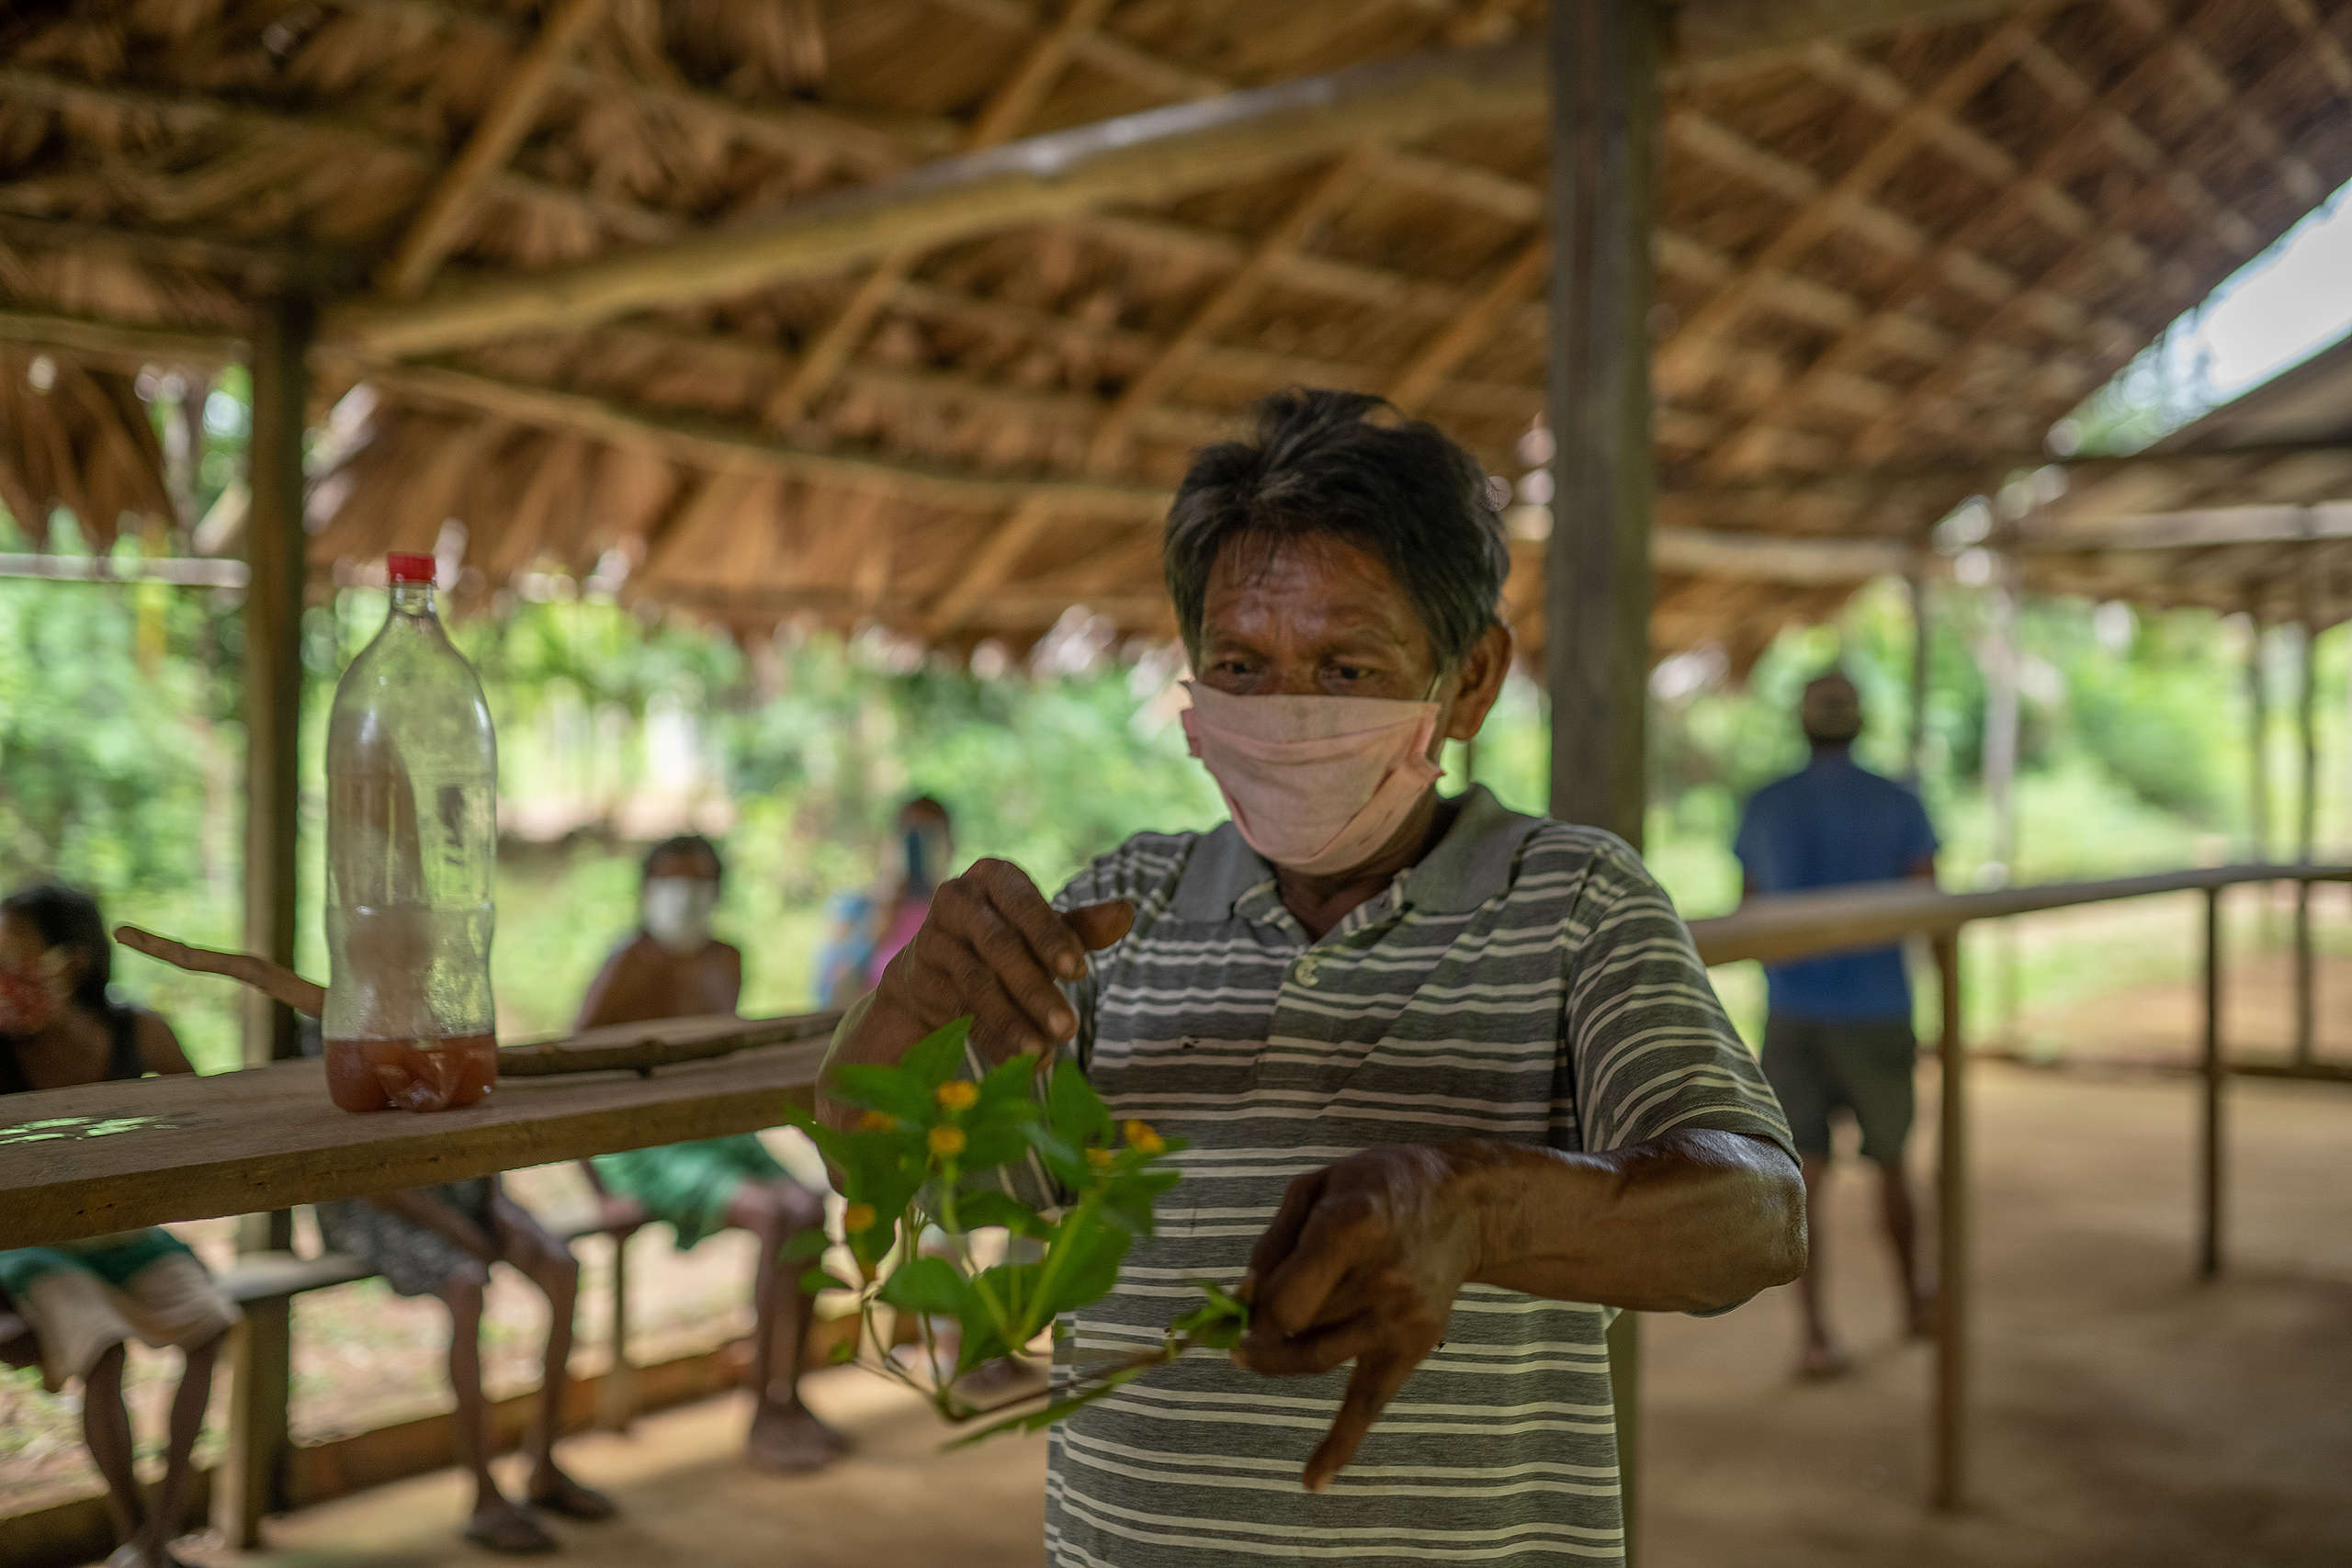 Jair mostra plantas e o chá utilizado por eles para se recuperar da Covid-19  © Christian Braga / Greenpeace© Christian Braga / Greenpeace